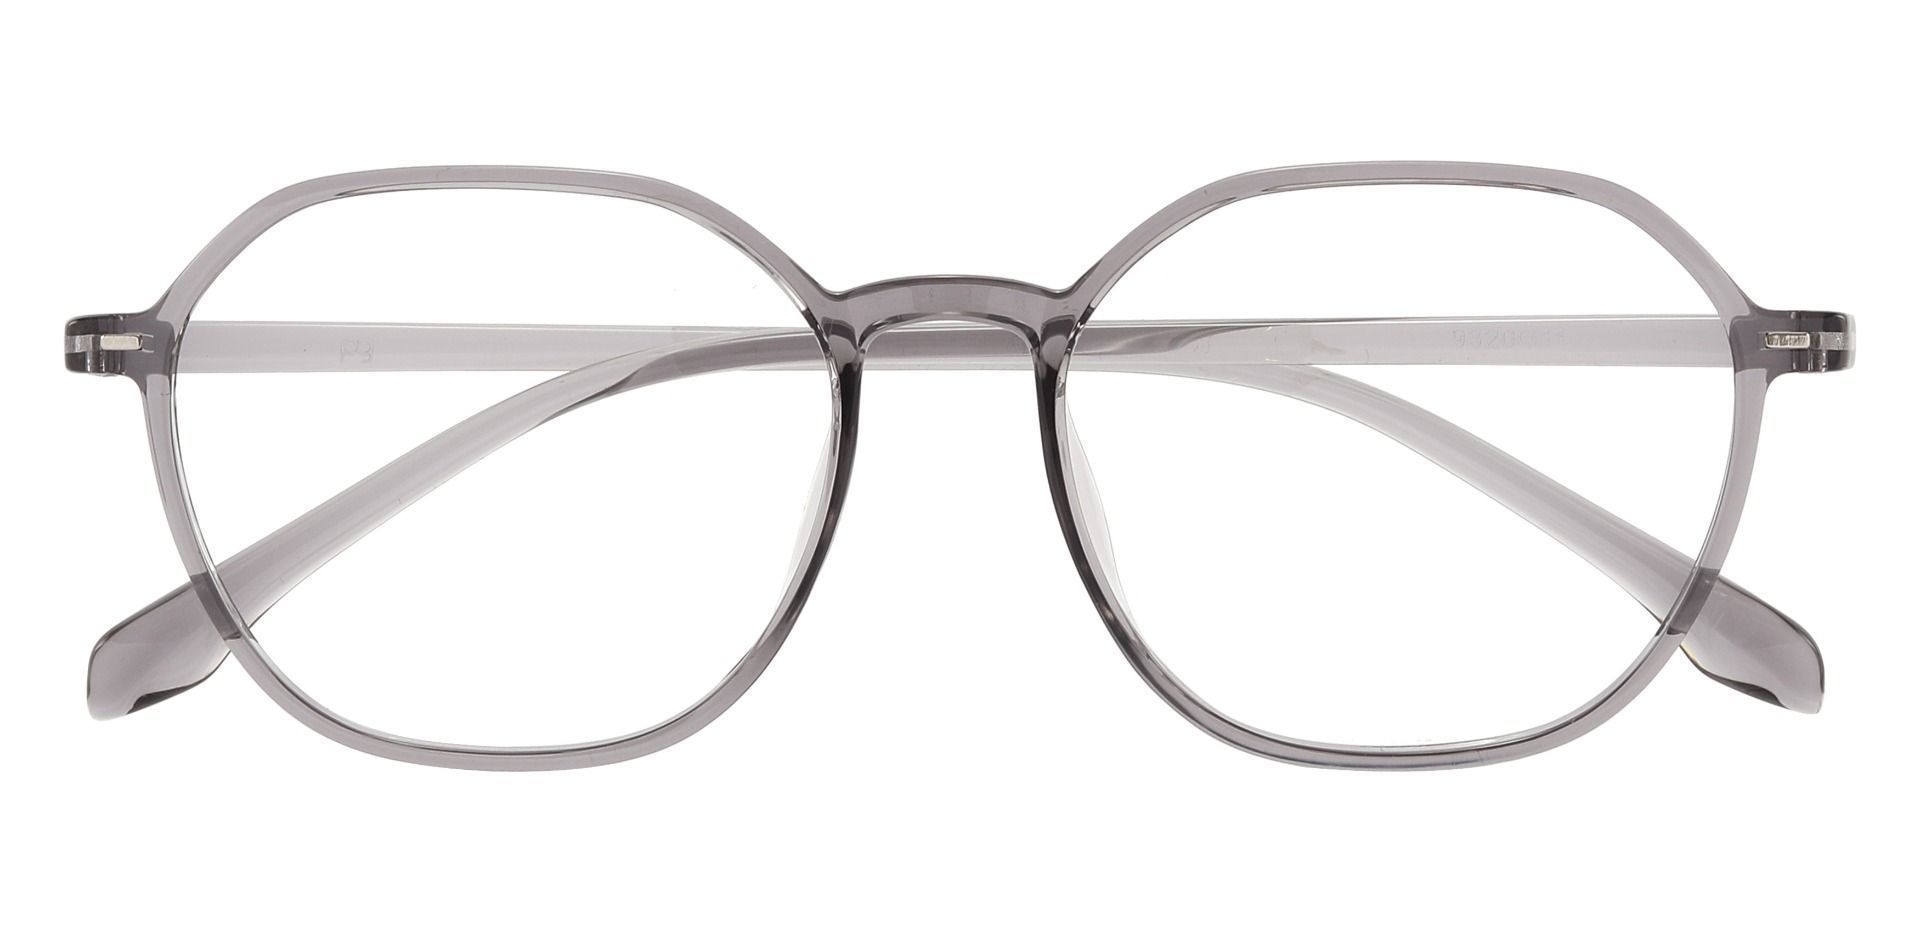 Detroit Geometric Progressive Glasses - Gray